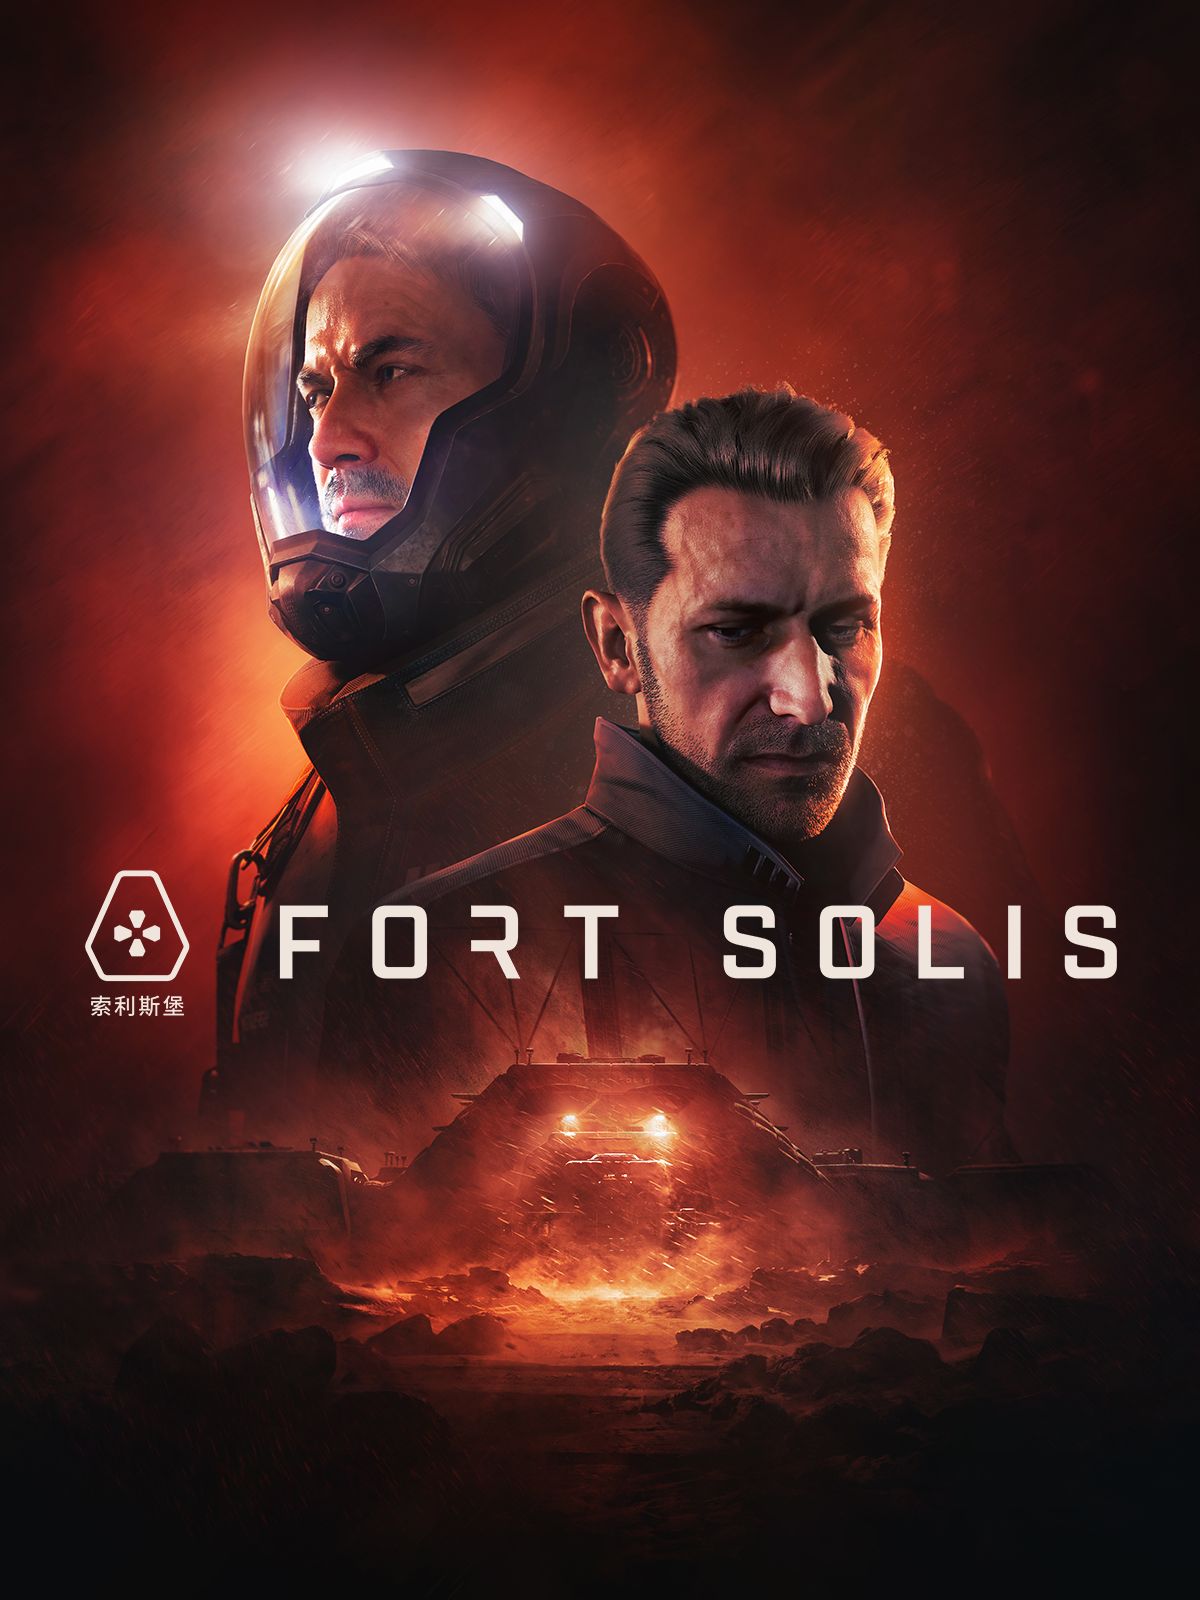 jaquette du jeu vidéo Fort Solis